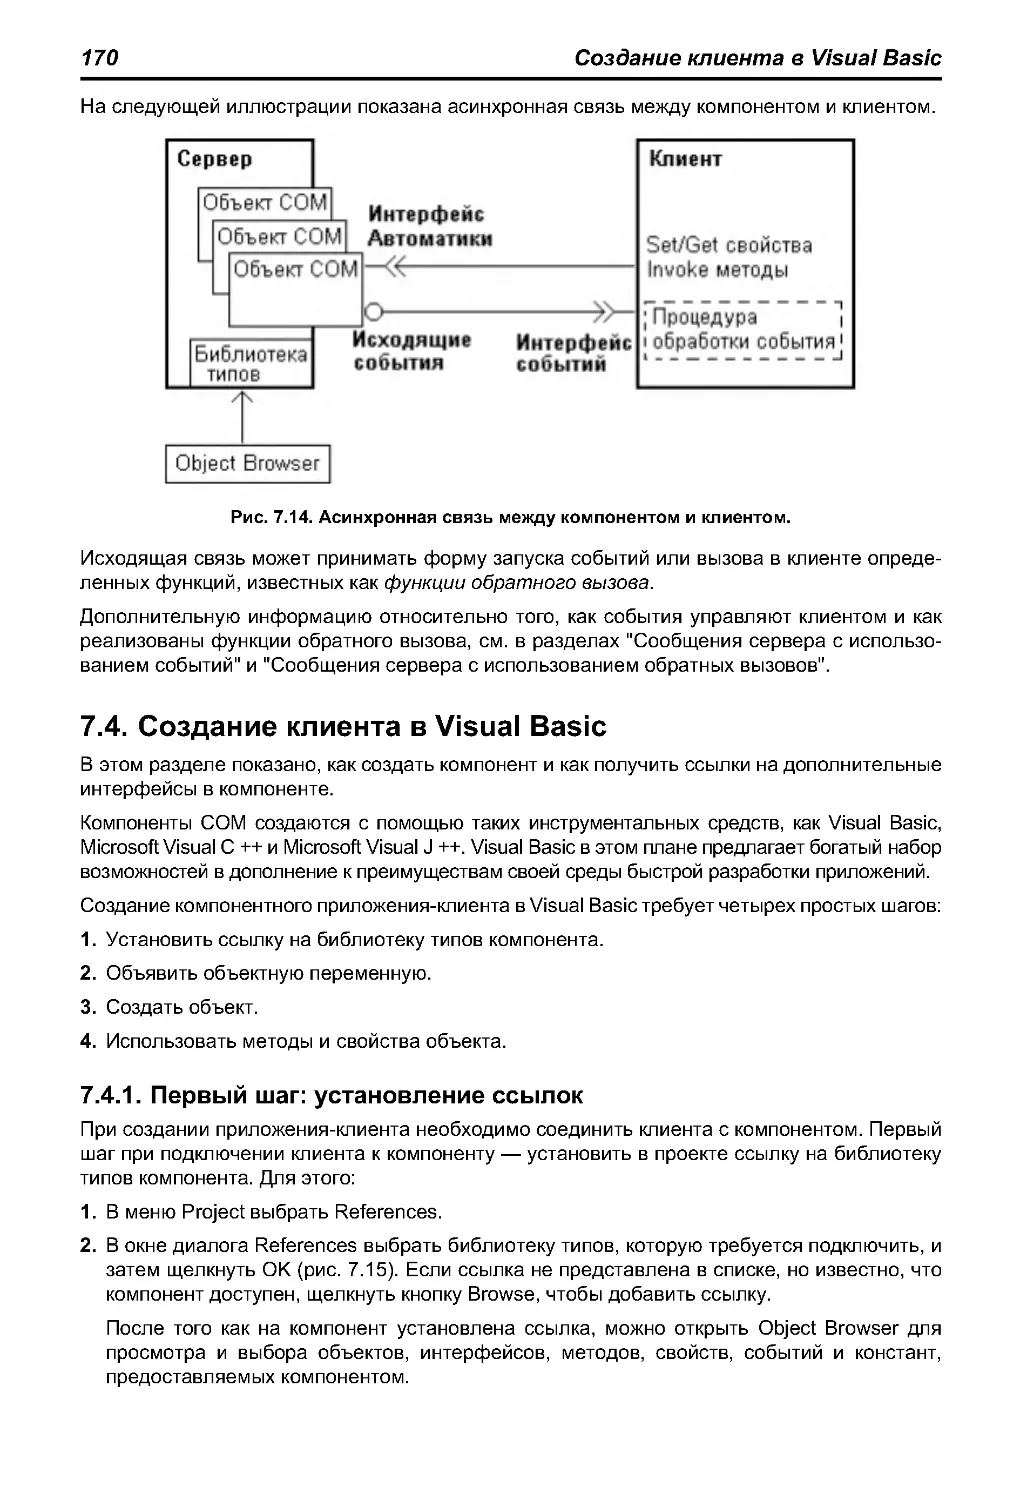 7.4. Создание клиента в Visual Basic